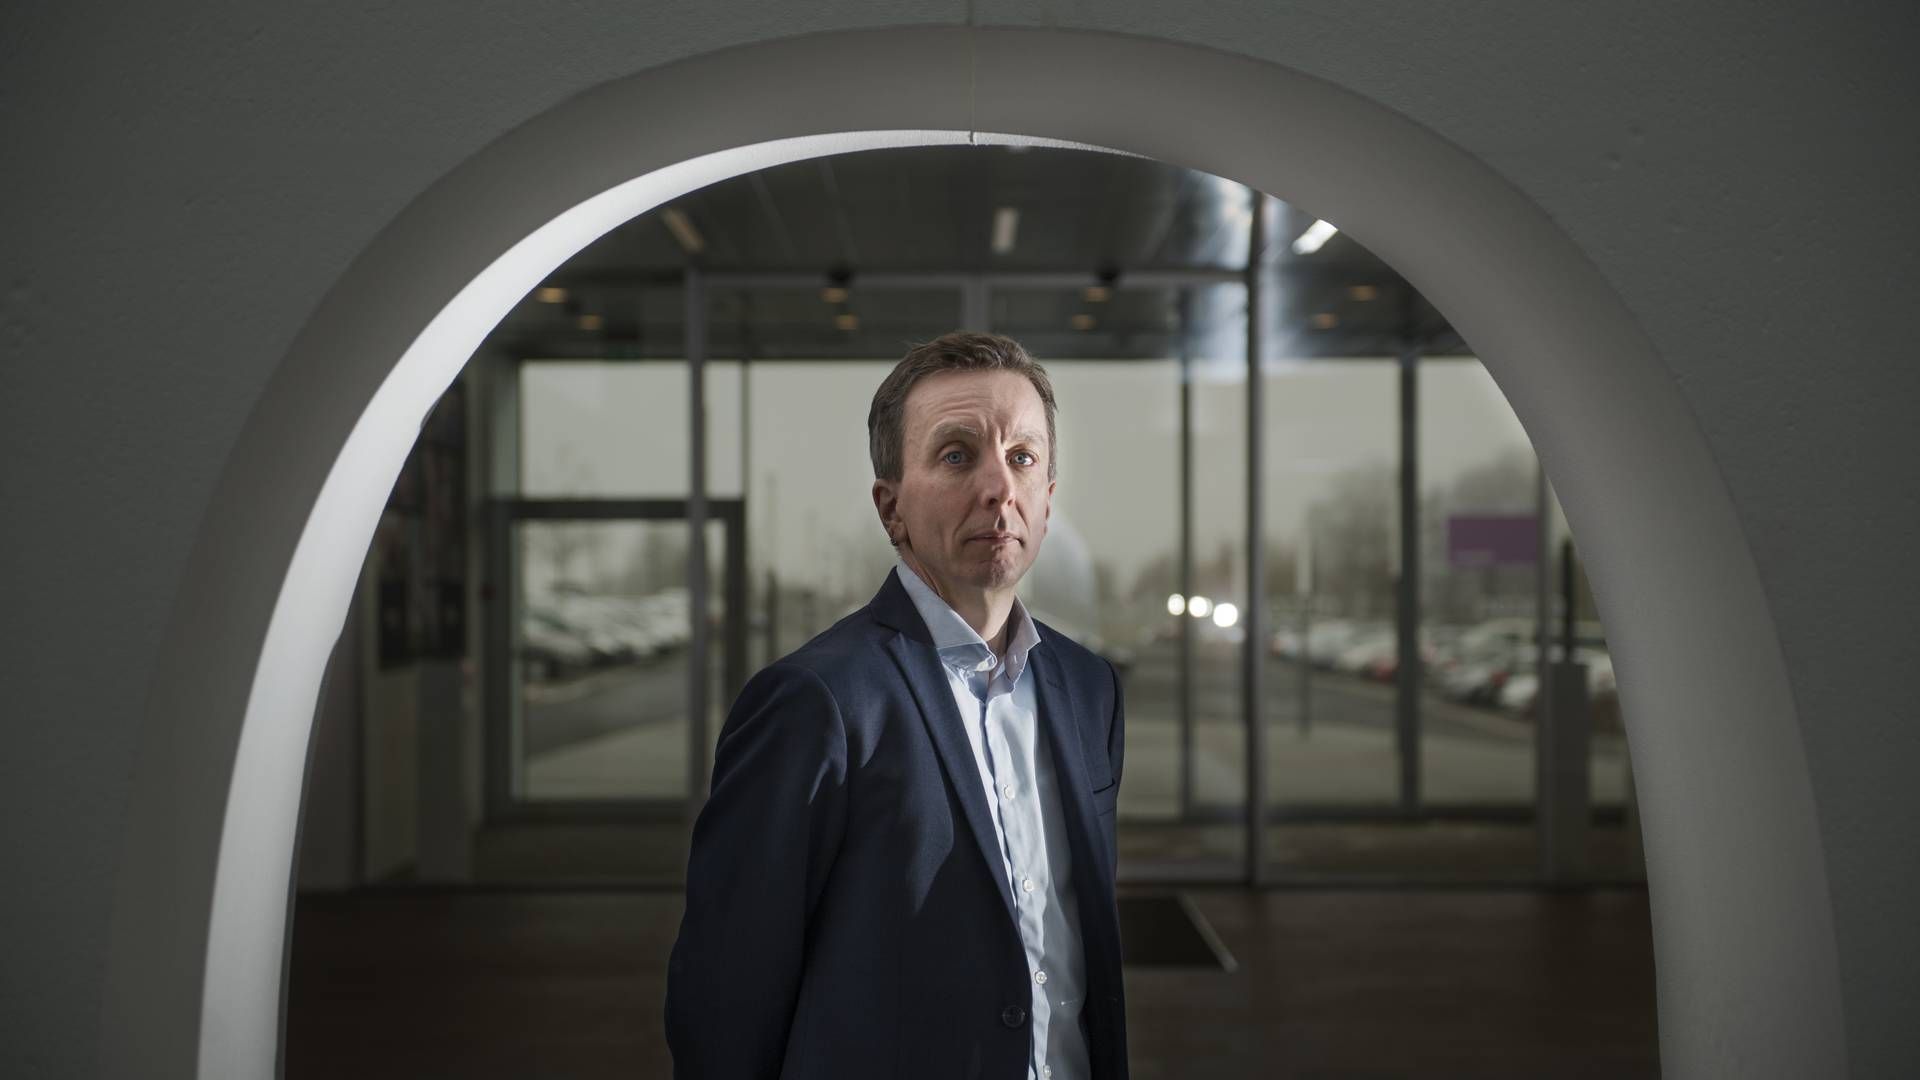 Søren Nielsen, CEO of Demant | Photo: Kenneth Lysbjerg Koustrup/ERH